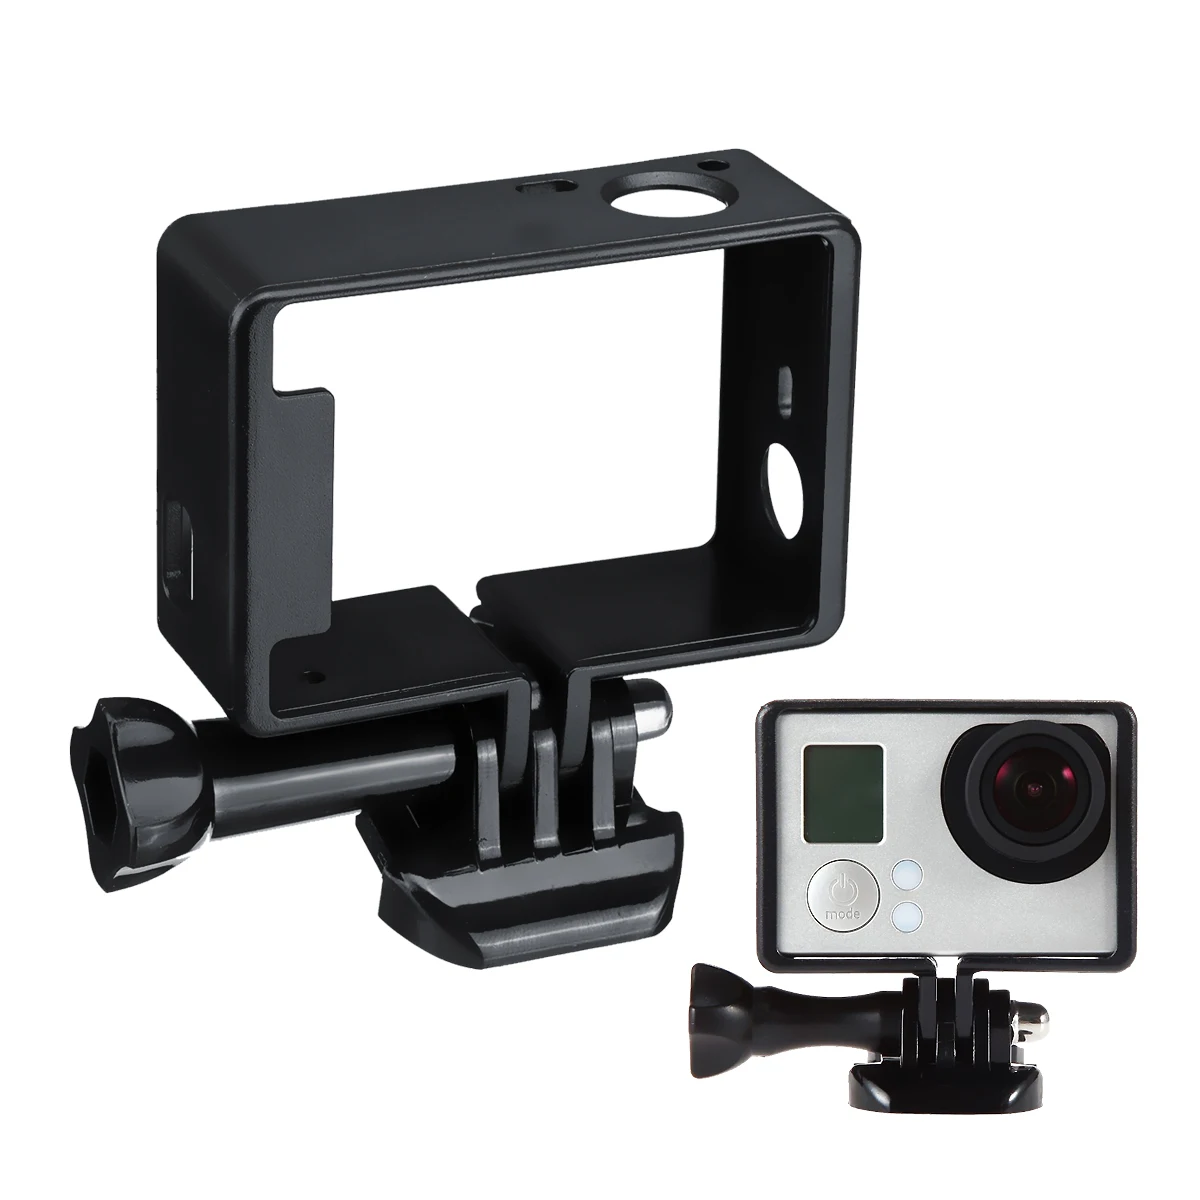 Рамка Корпус случае набор крепежных винтов для GoPro Hero 4 3 3 Plus Спорт Камера аксессуары рамка держатели Защитная крышка объектива Комплект